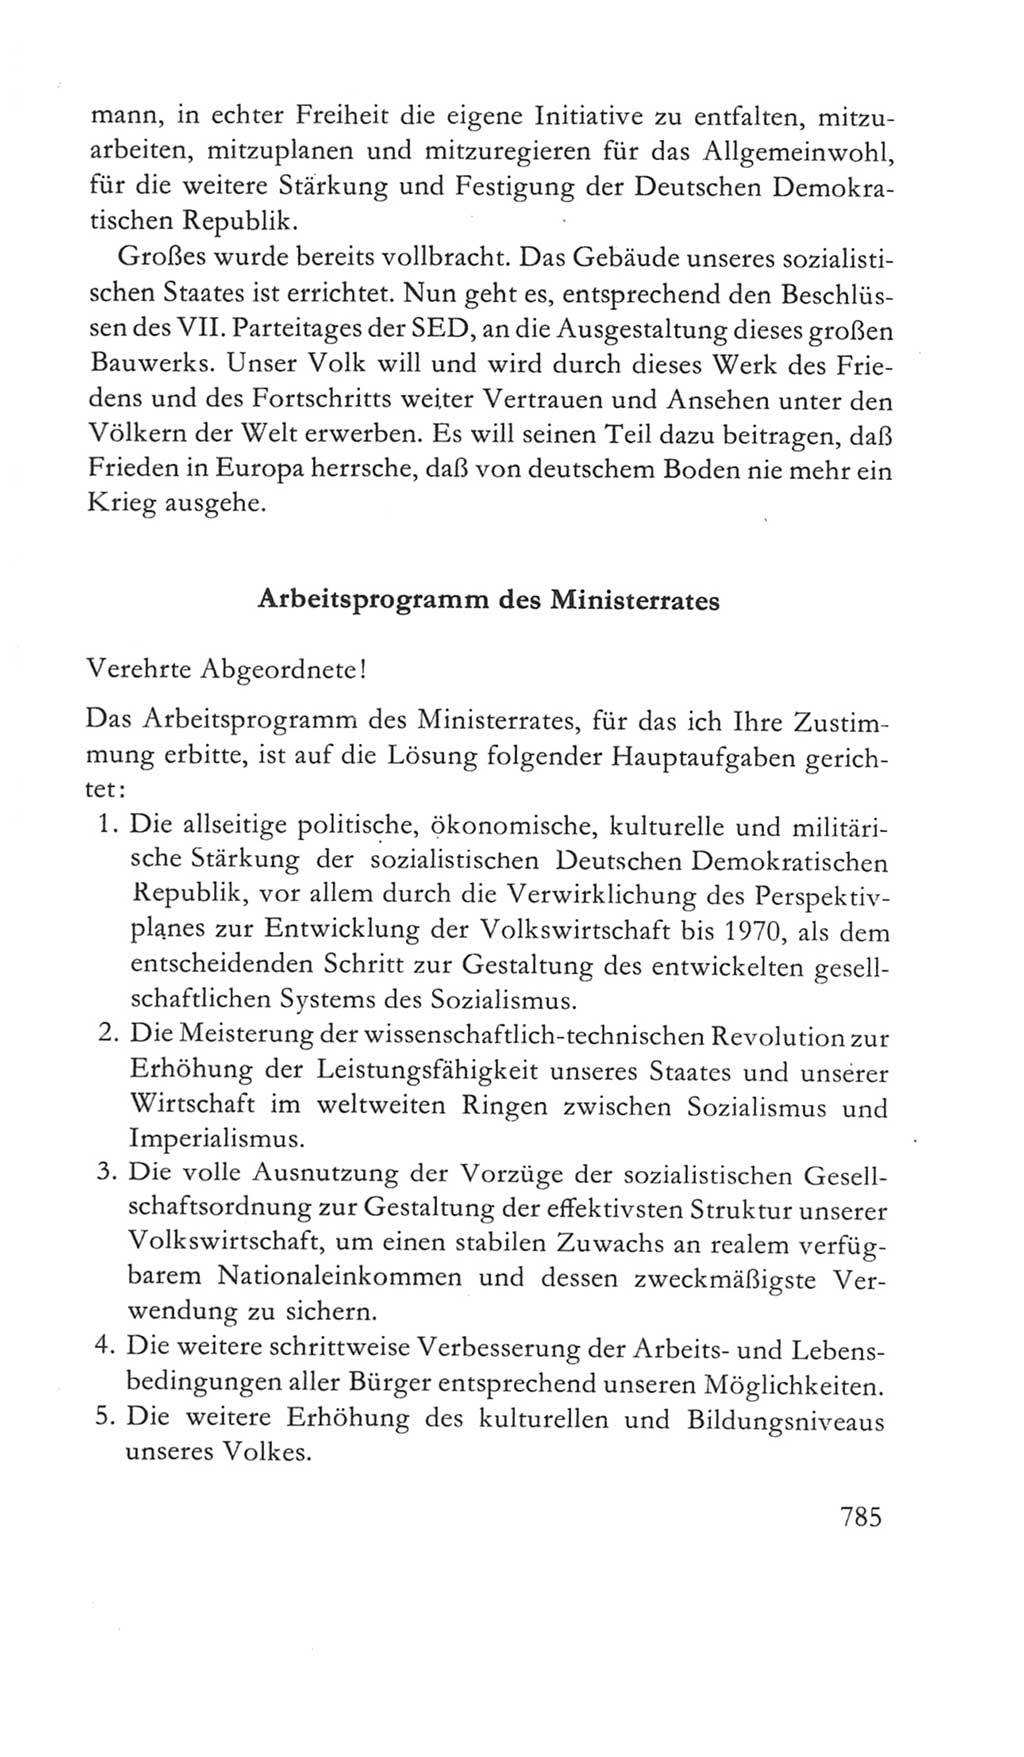 Volkskammer (VK) der Deutschen Demokratischen Republik (DDR) 5. Wahlperiode 1967-1971, Seite 785 (VK. DDR 5. WP. 1967-1971, S. 785)